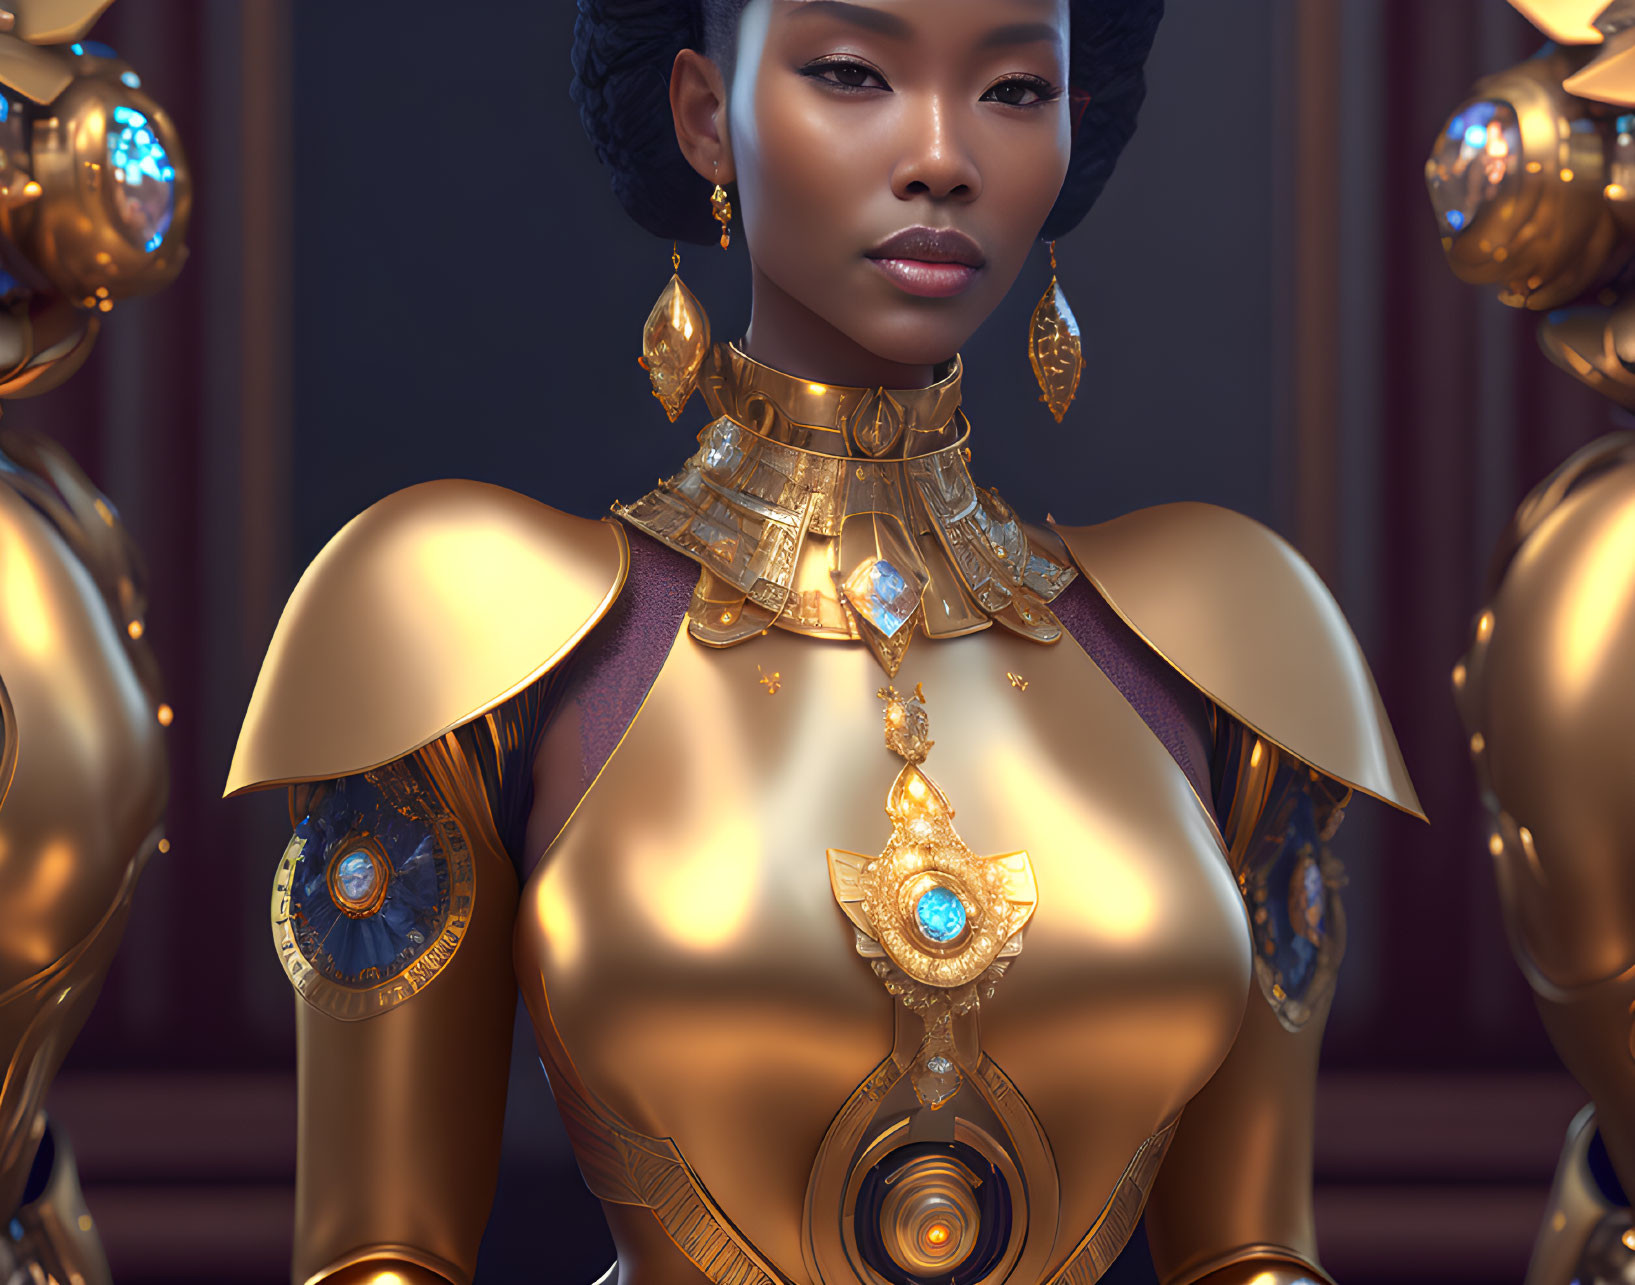 Digital Art: Woman in Golden Mechanical Suit with Gemstones